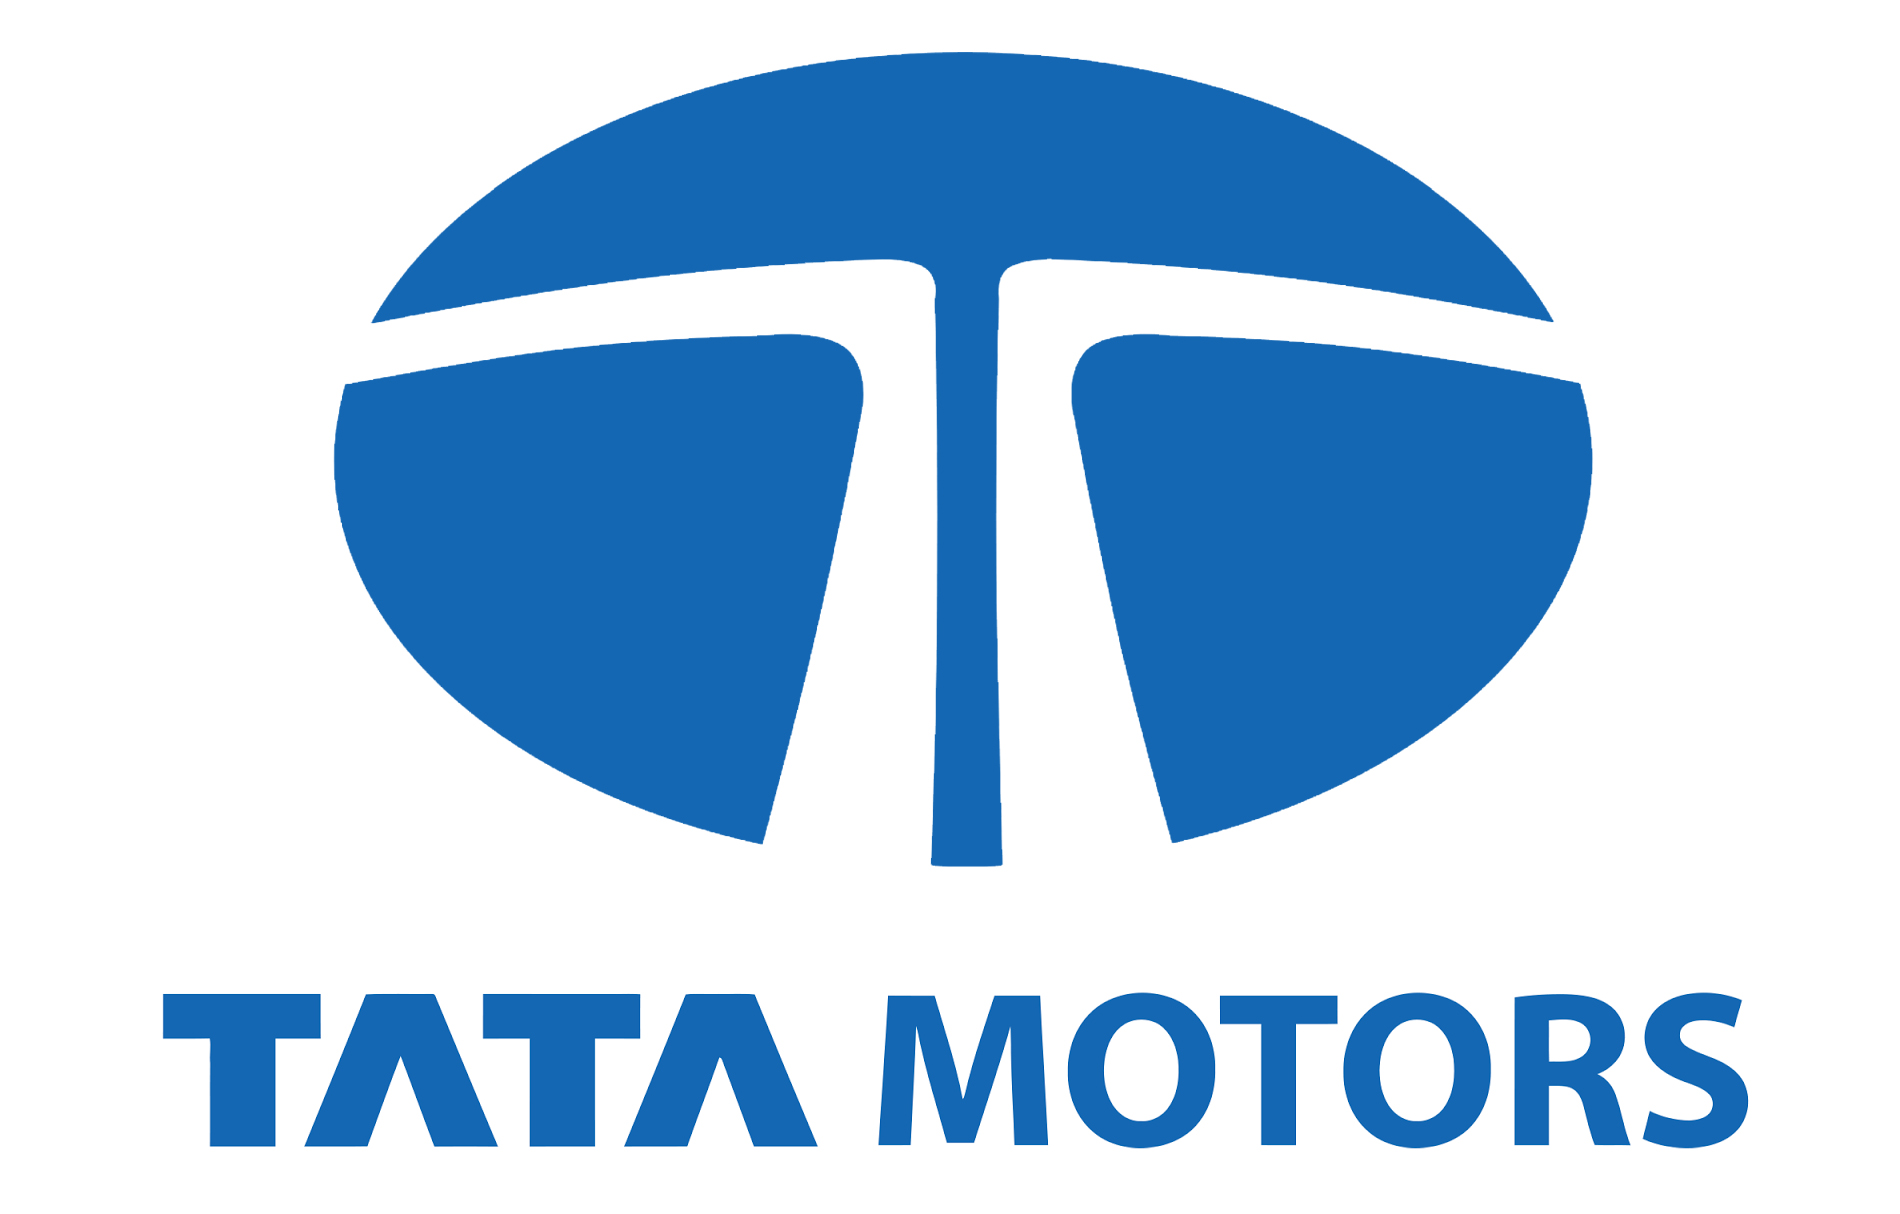 Tata Motors Cars Showroom - J V Motors|Show Room|Automotive